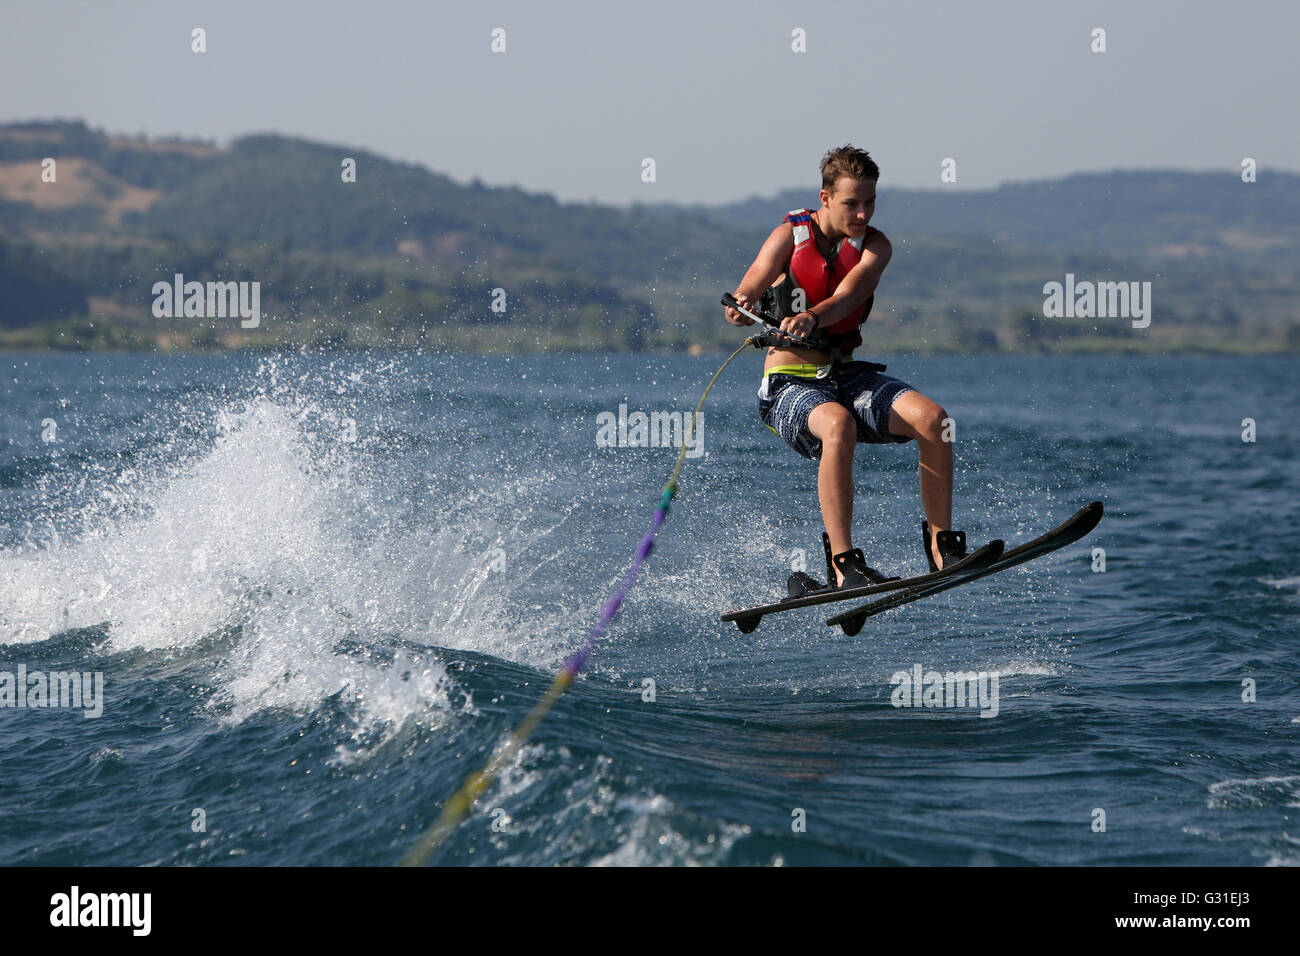 Capodimonte, Italia, el niño corriendo el esquí acuático en el lago de Bolsena Foto de stock